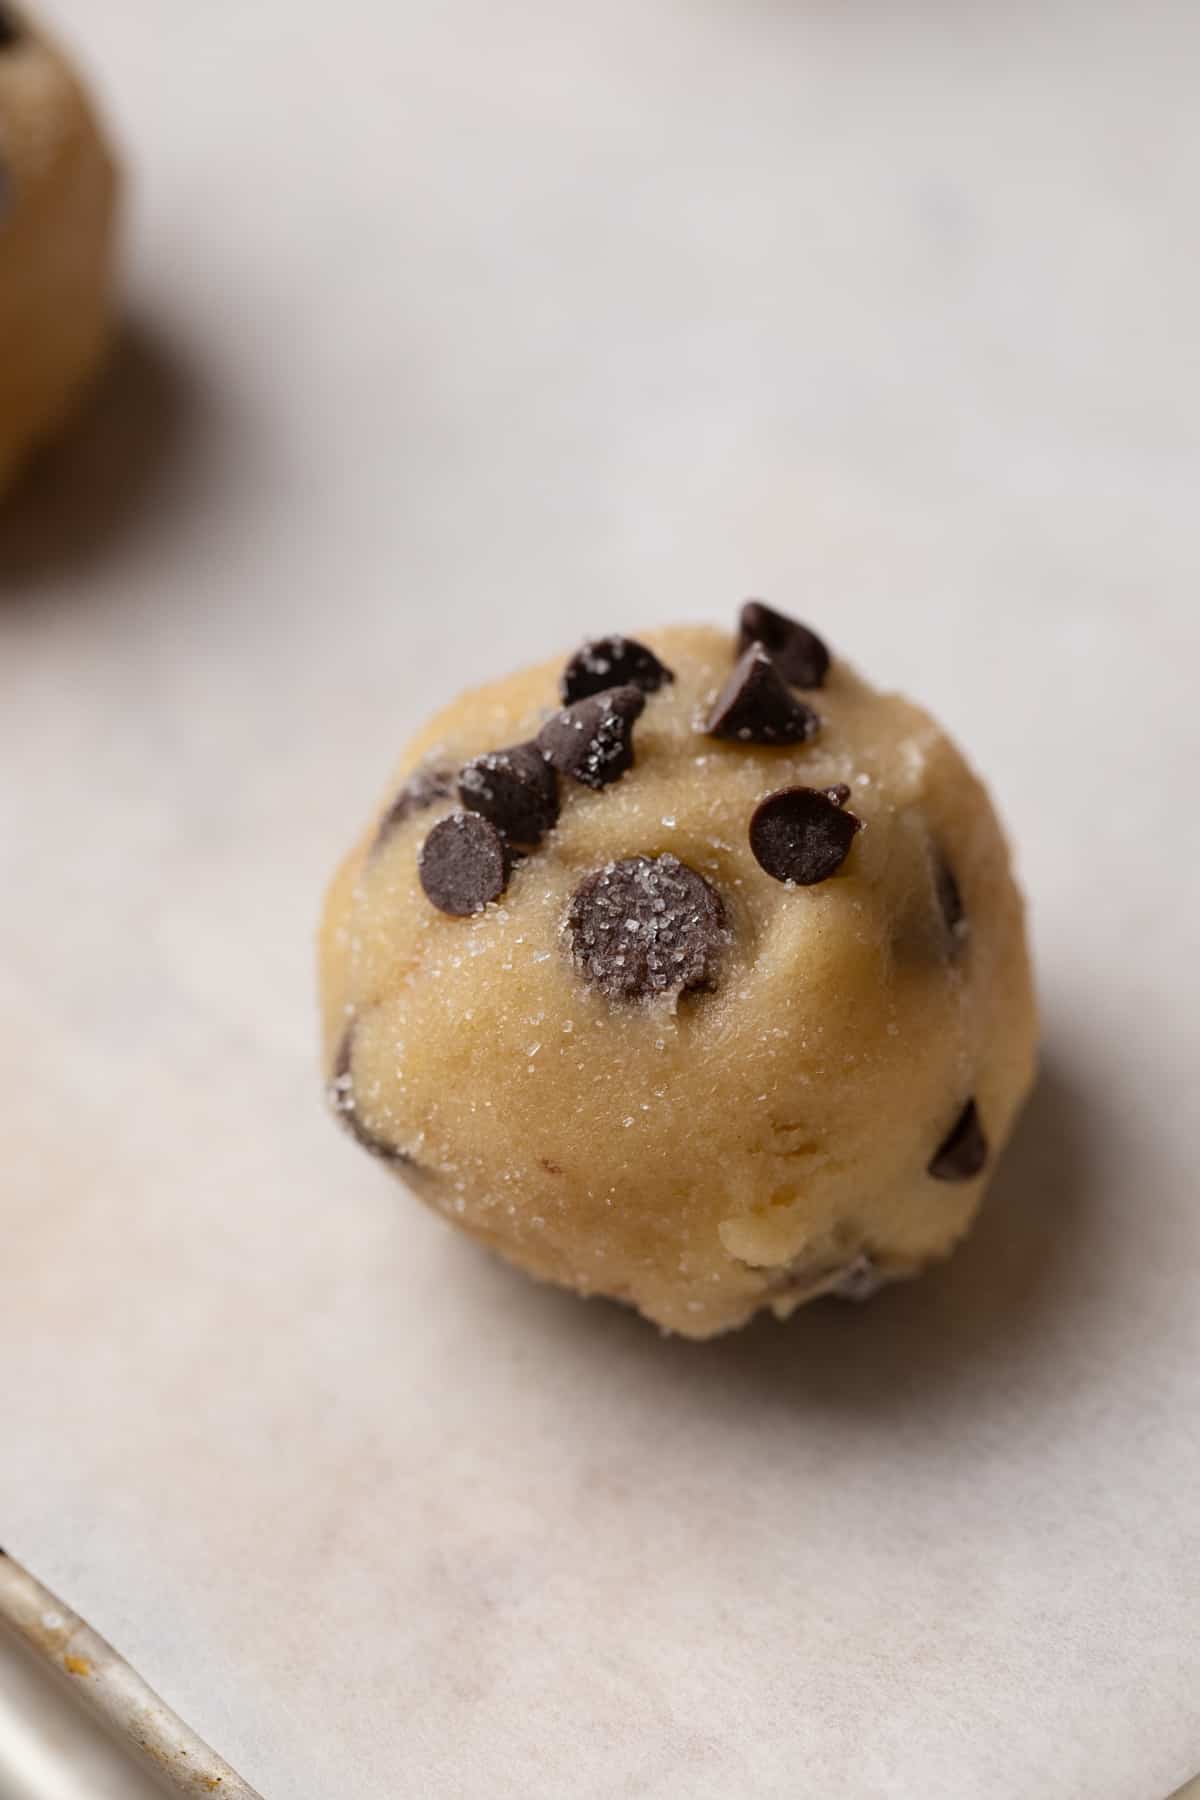 A cookie dough ball on a baking sheet.